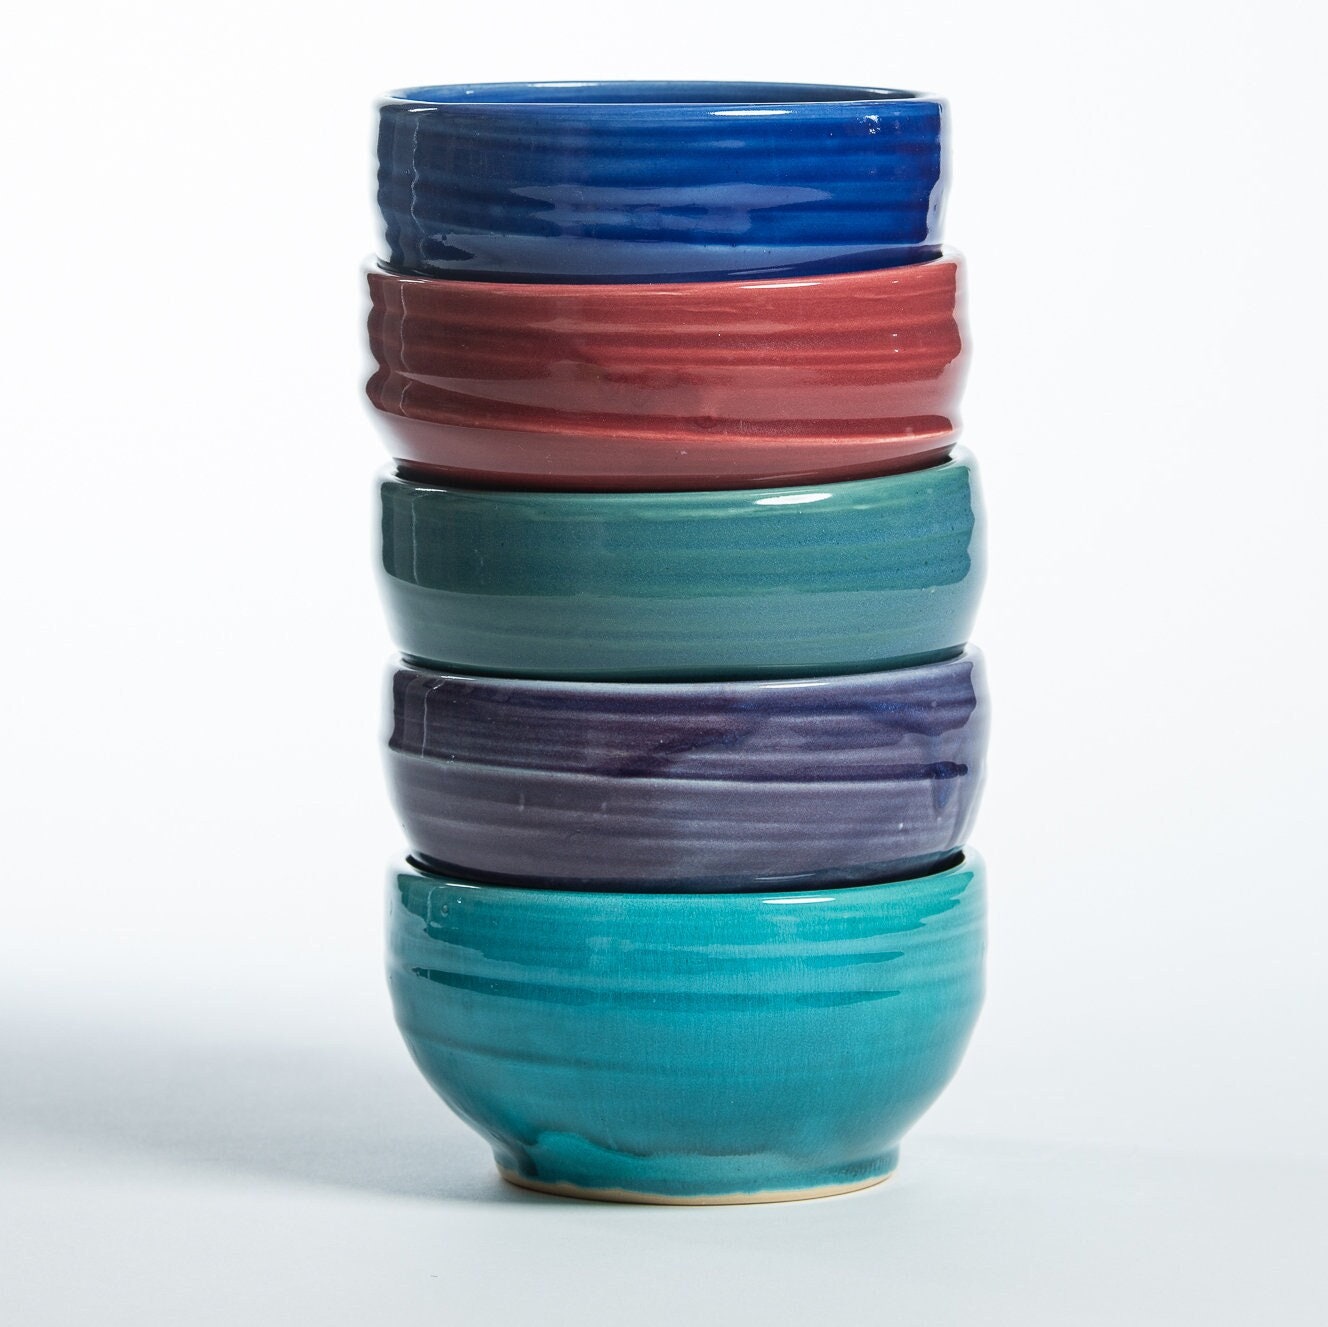 Le Creuset Pinch Bowls, Set of 6 - Multi-Color